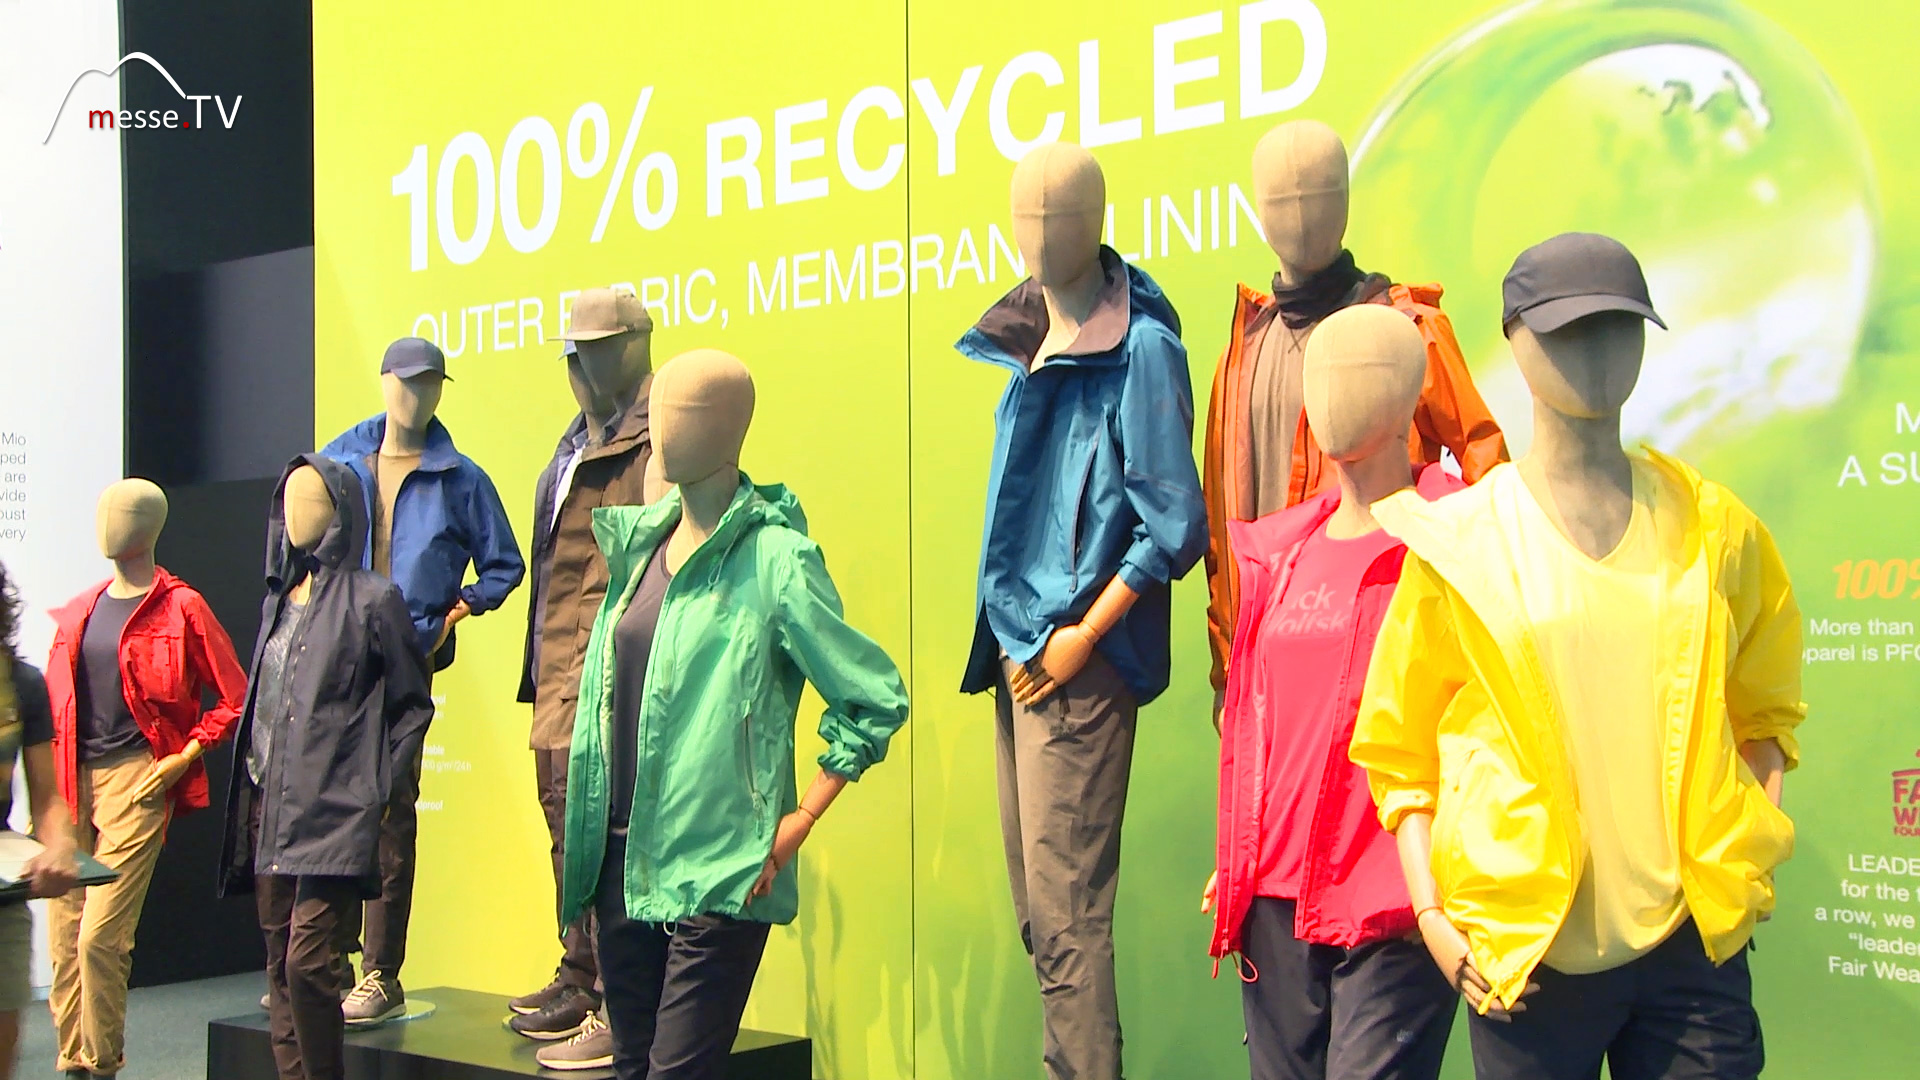 leisure fashion recycled Jack Wolfskin outdoor Friedrichshafen